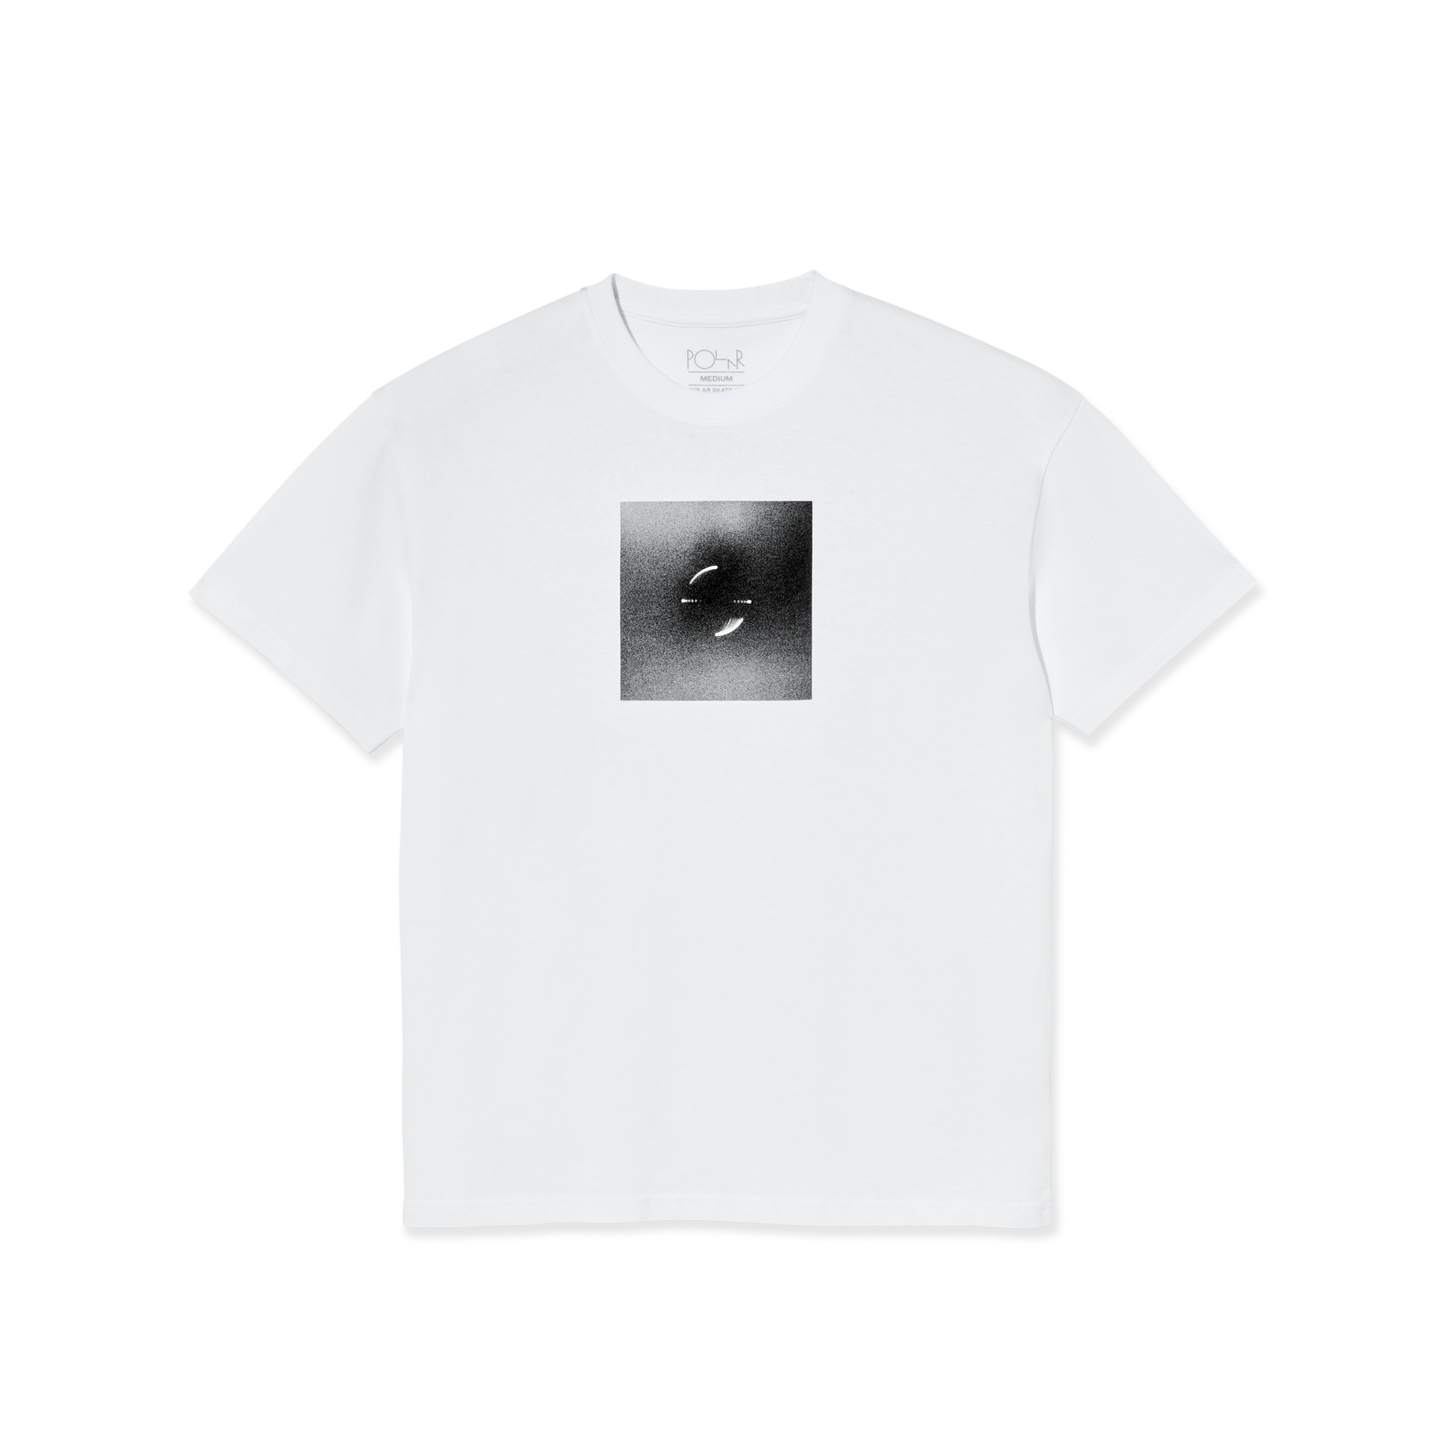 Polar Magnetic Field T-Shirt White